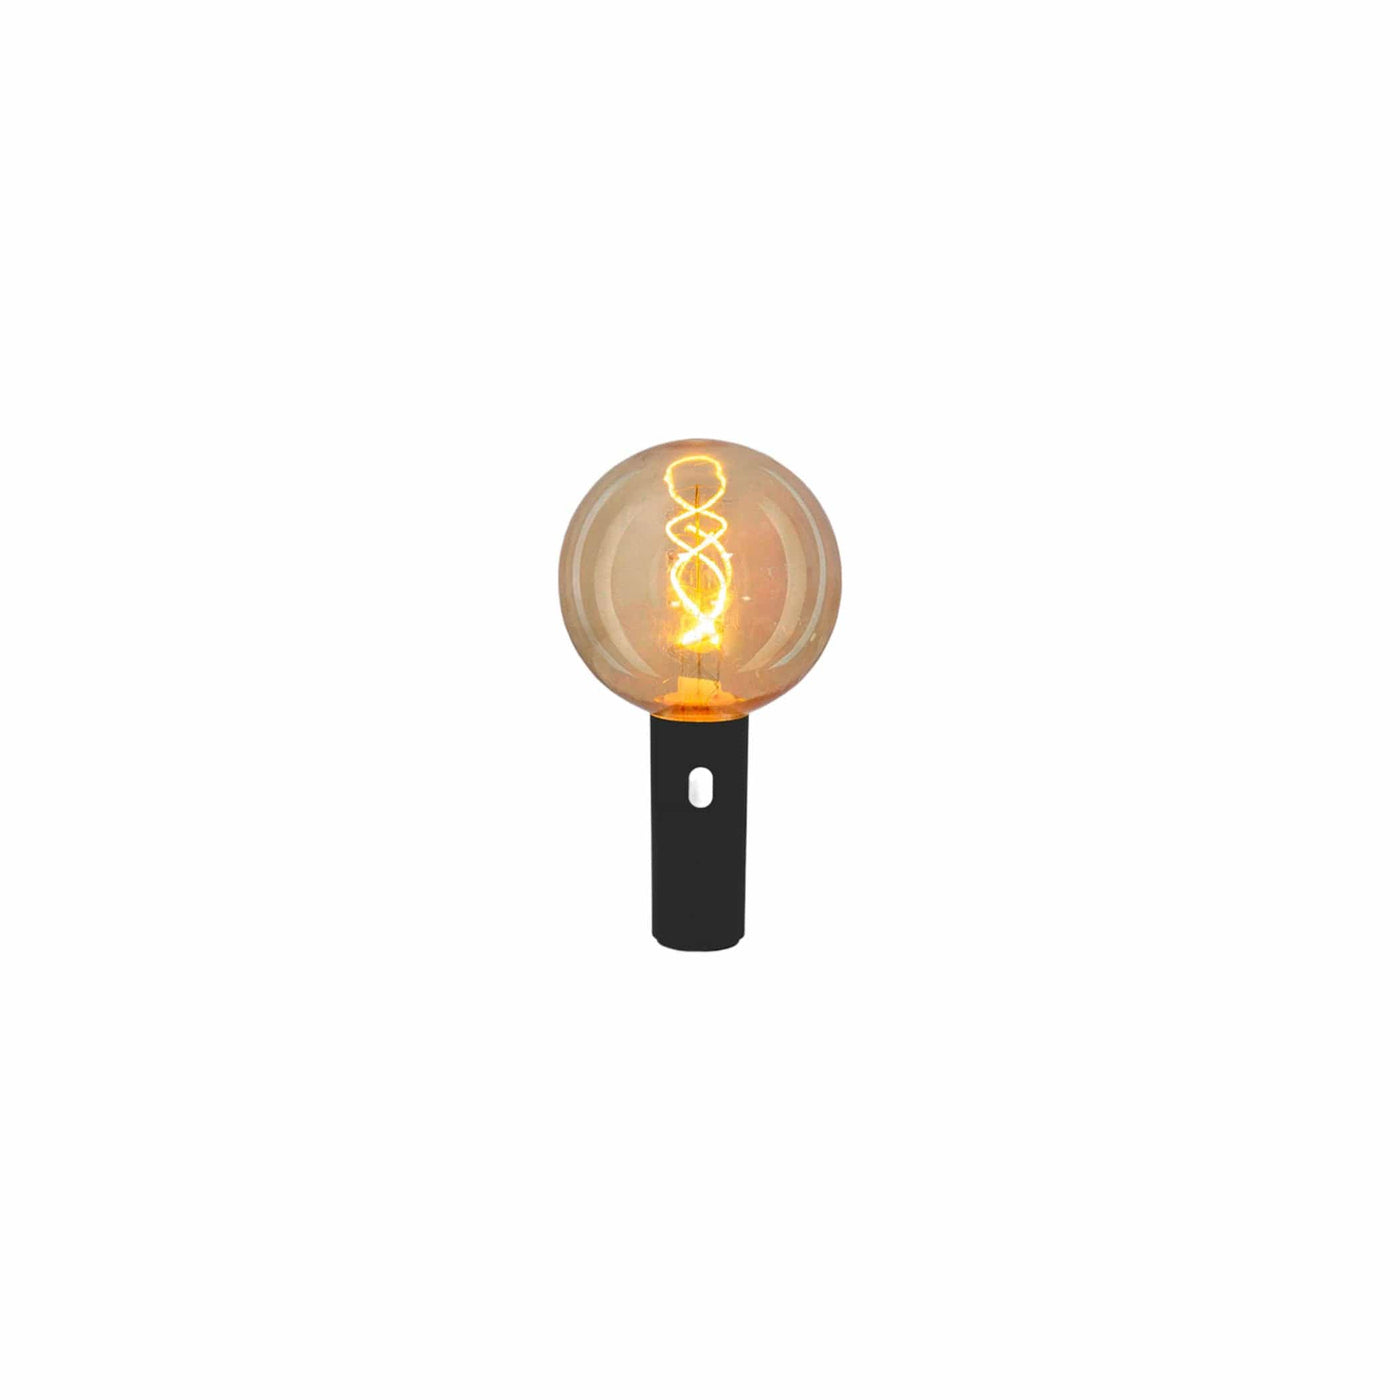 Découvrez l'ampoule Edy 125 de Newgarden : base magnétique, LED lumineuse, revêtement plastique fumé, cordon de 2 m pour une installation facile. Noir.